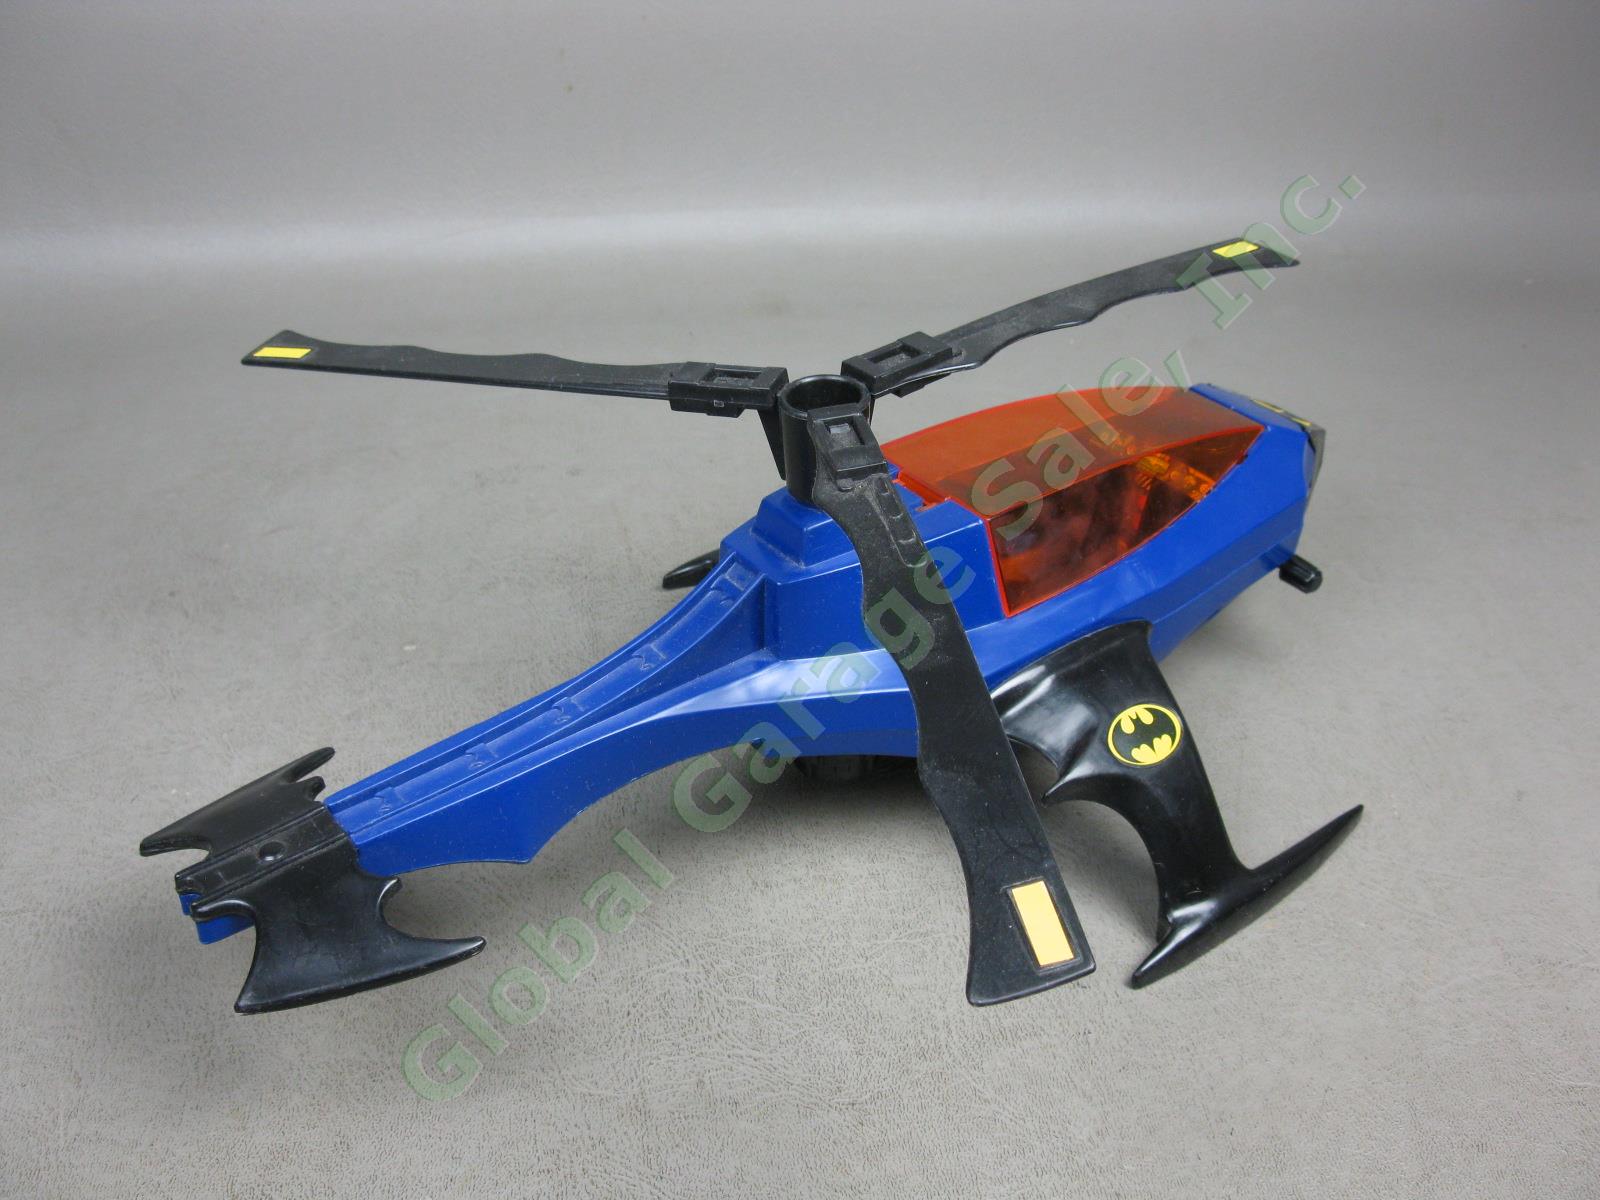 1986 Kenner Super Powers DC Comics Batman Batcopter Air-Pursuit Chopper Vehicle 4